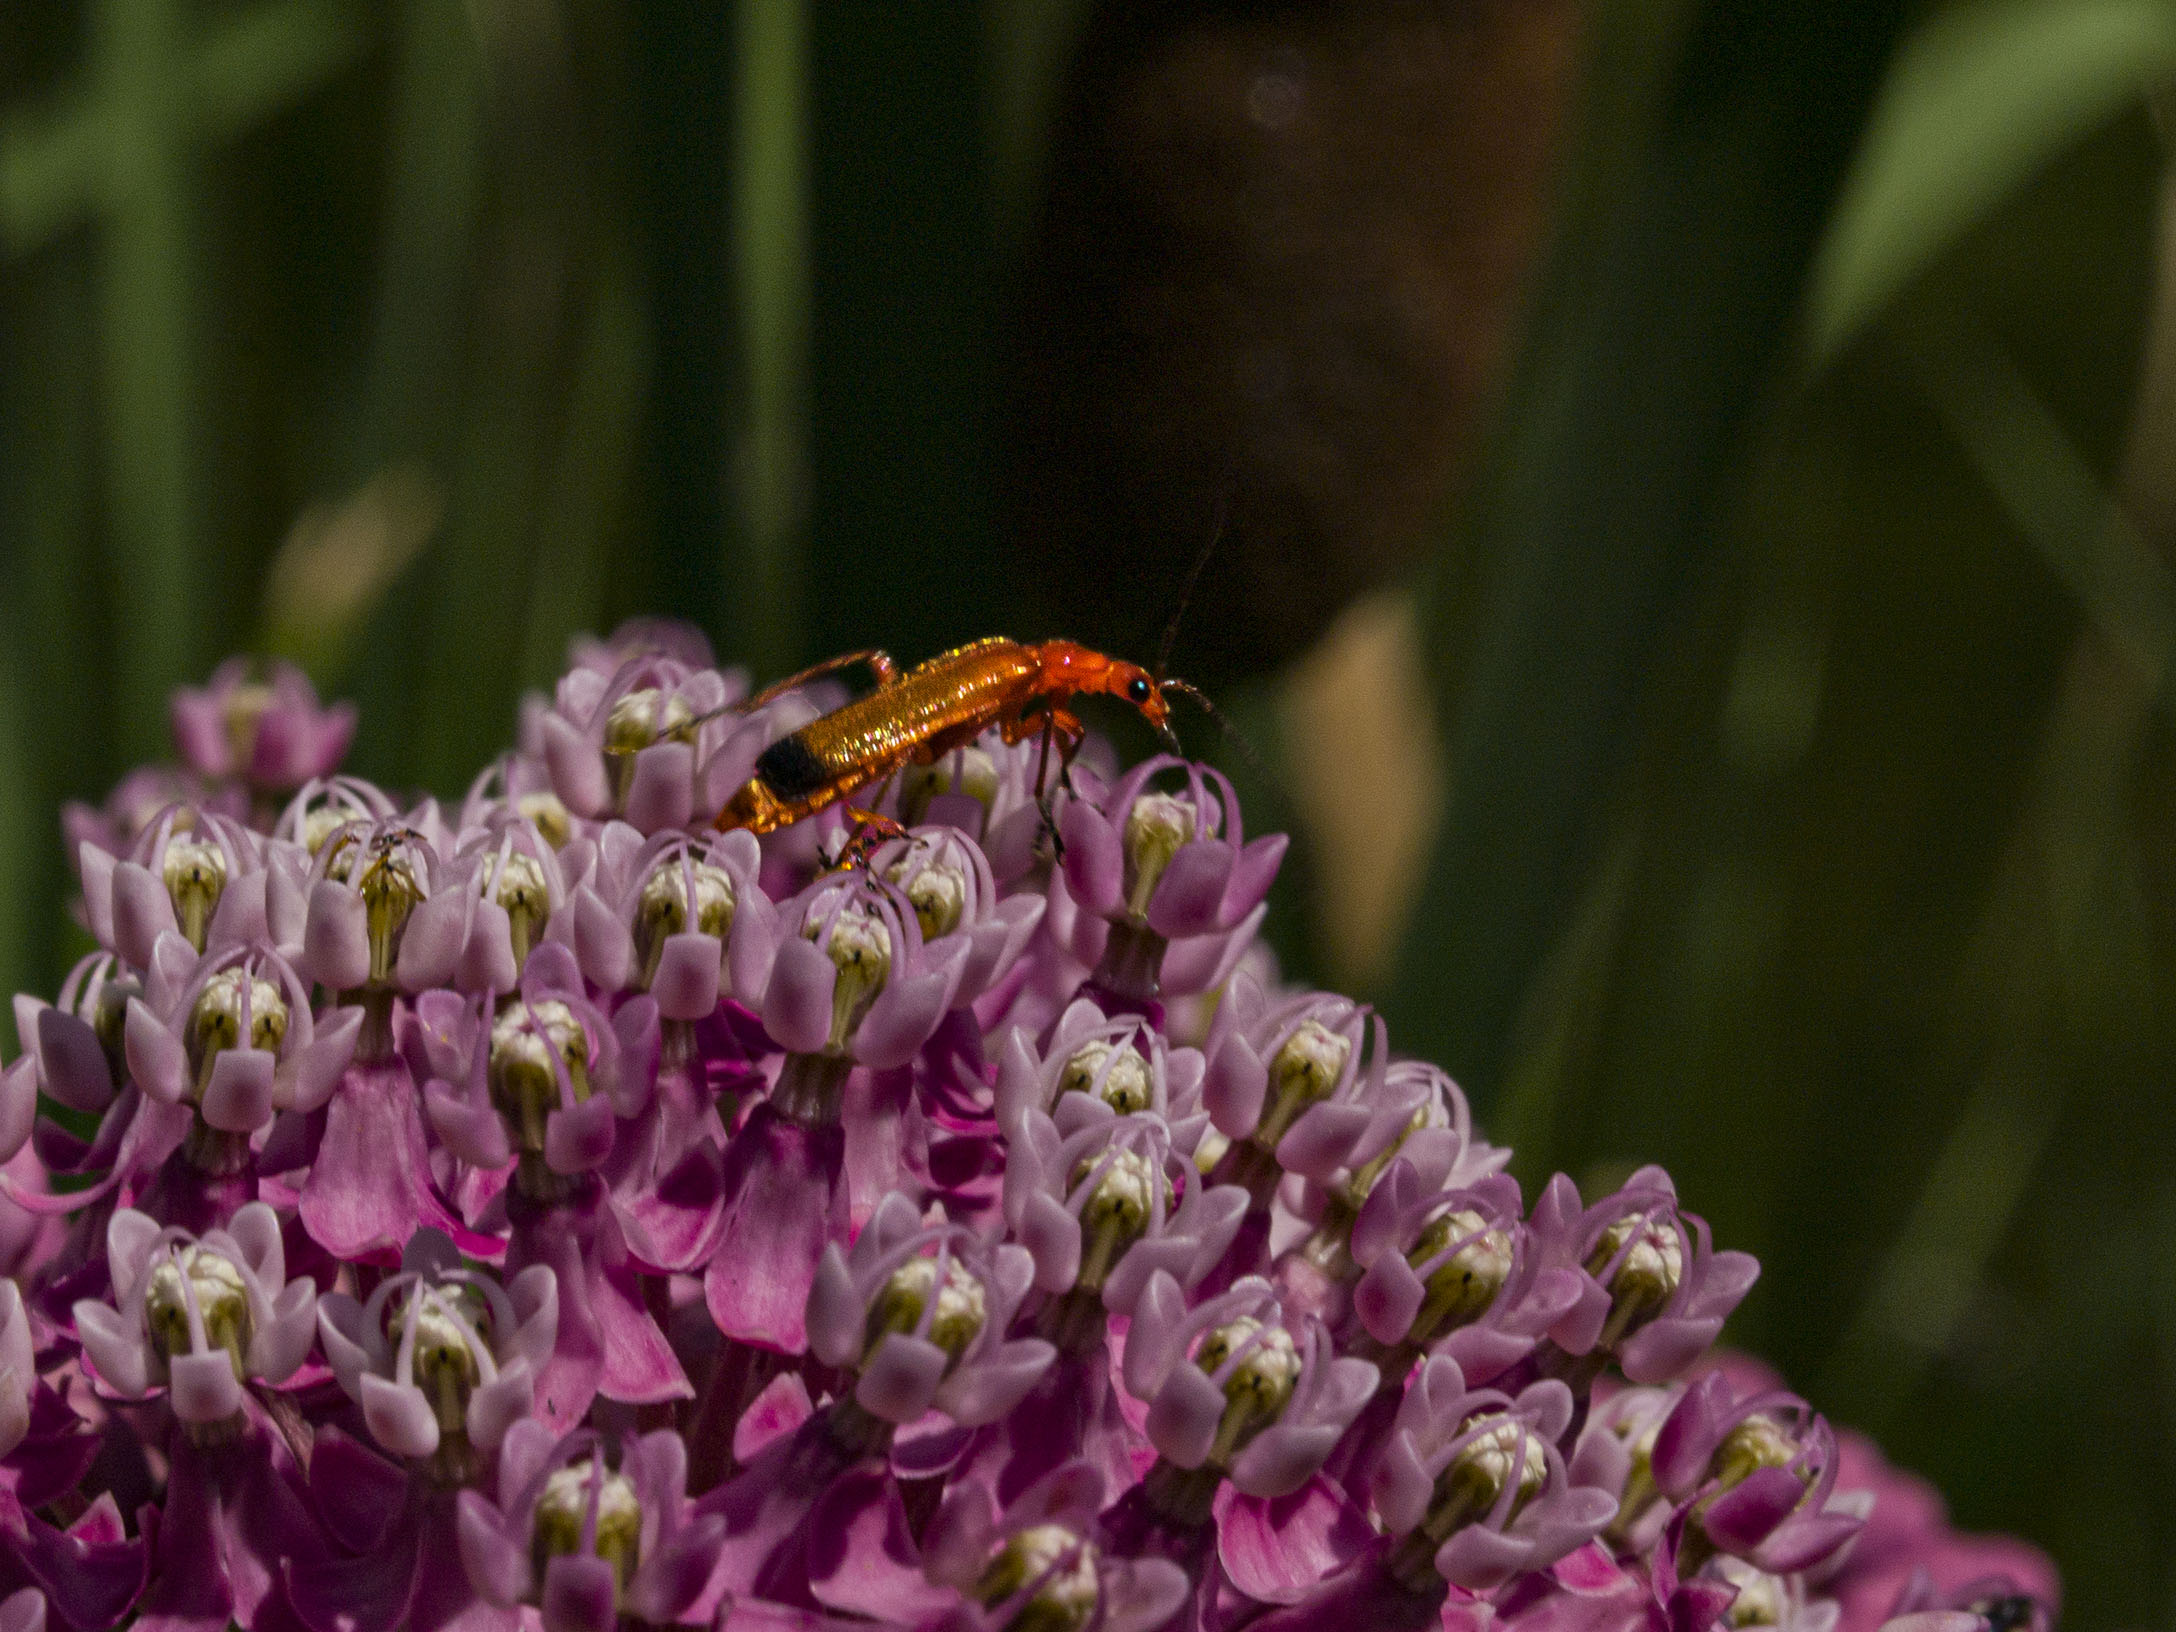 Common Red Soldier Beetle on Swamp Milkweed